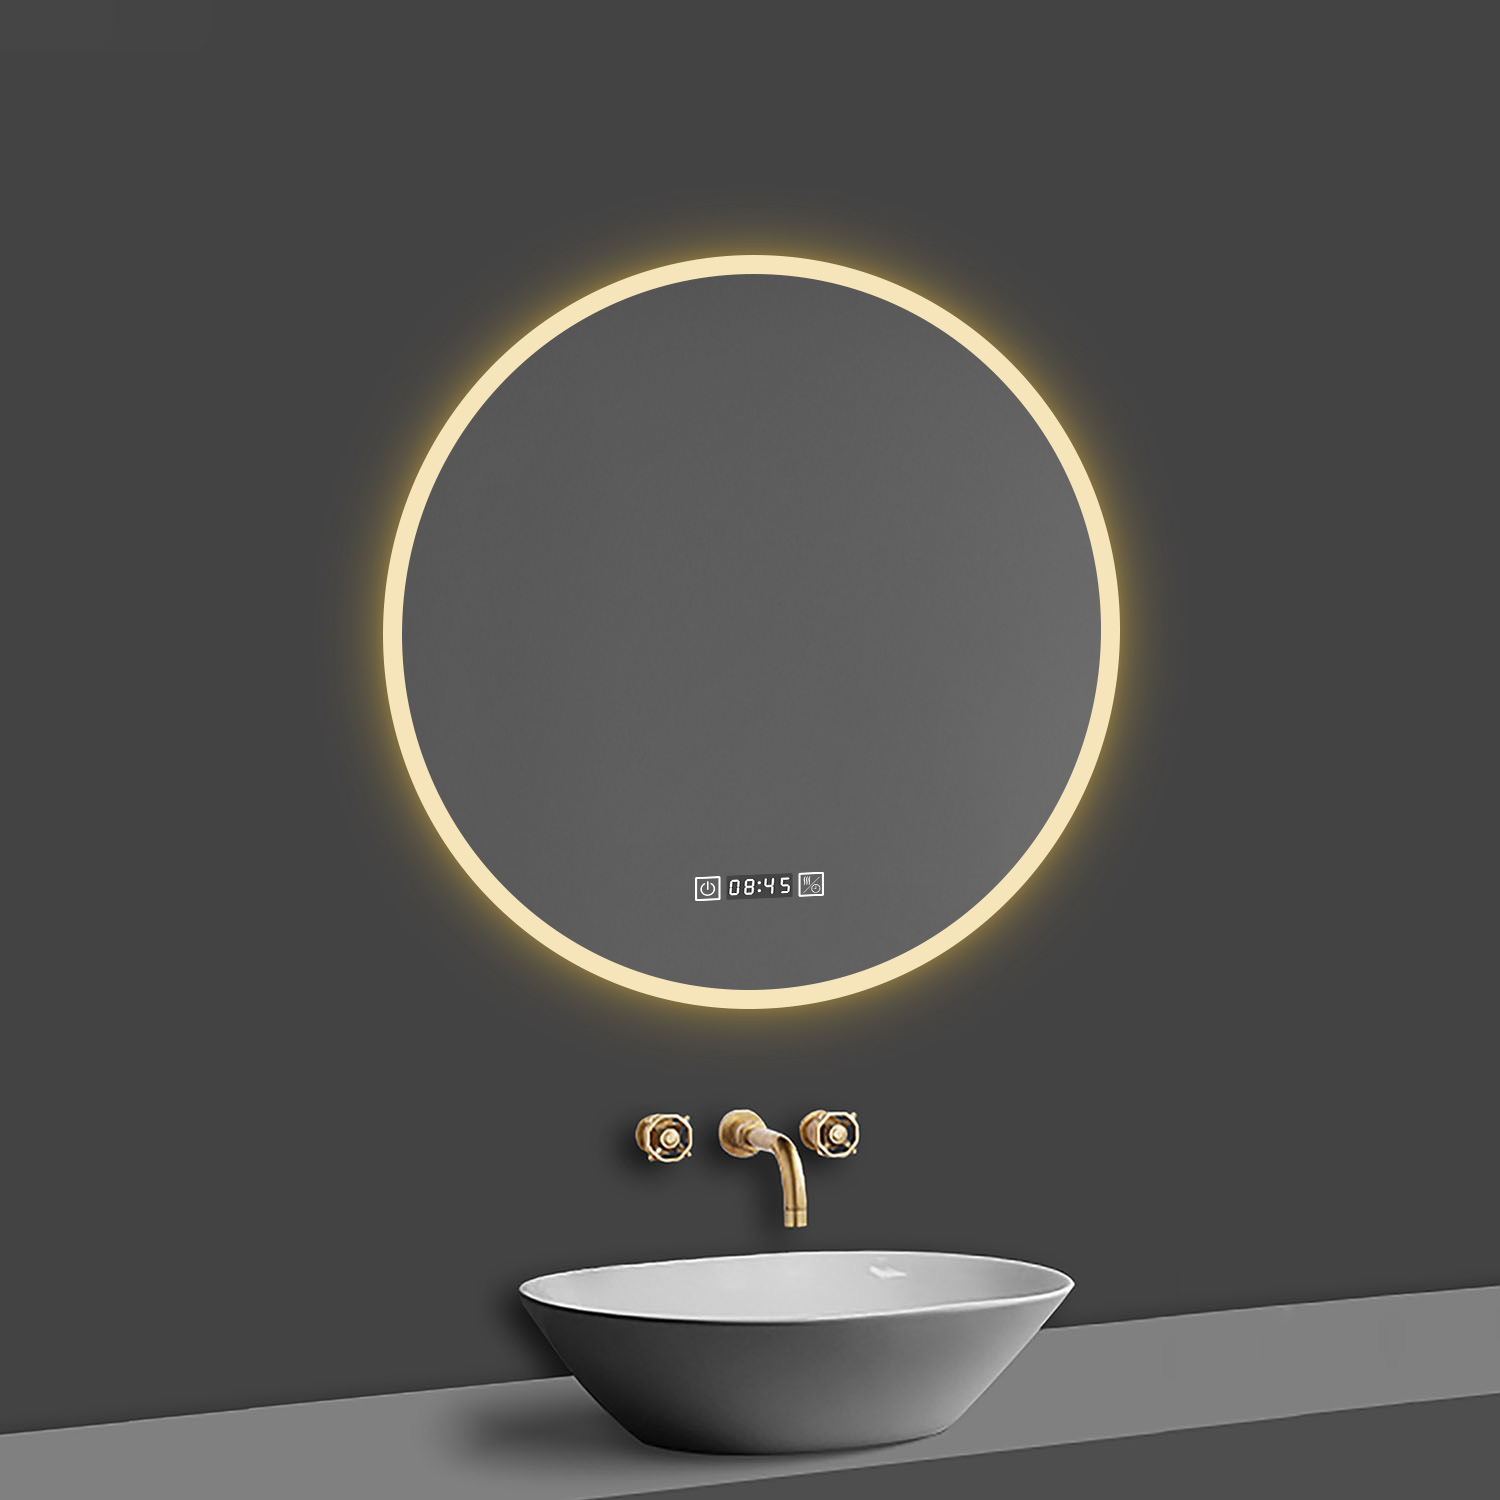 LED Spiegel Rund 60 cm Kalt/Warmweiß dimmbar Uhr TOUCH BESCHLAGFREI Wandspiegel